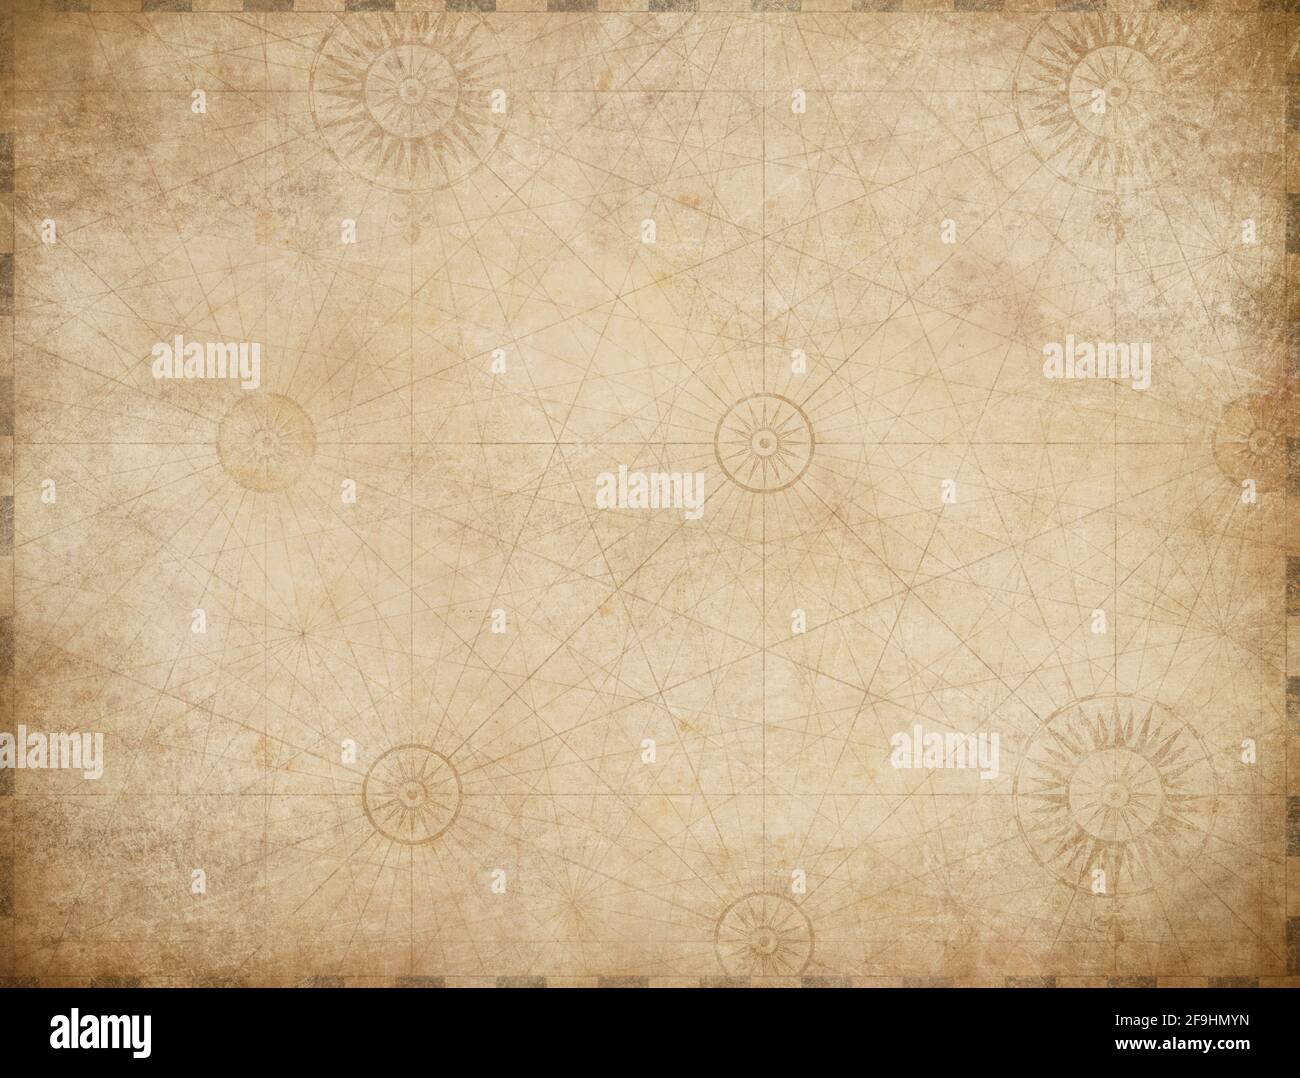 el fondo del mapa del tesoro de los piratas náuticos antiguos Foto de stock